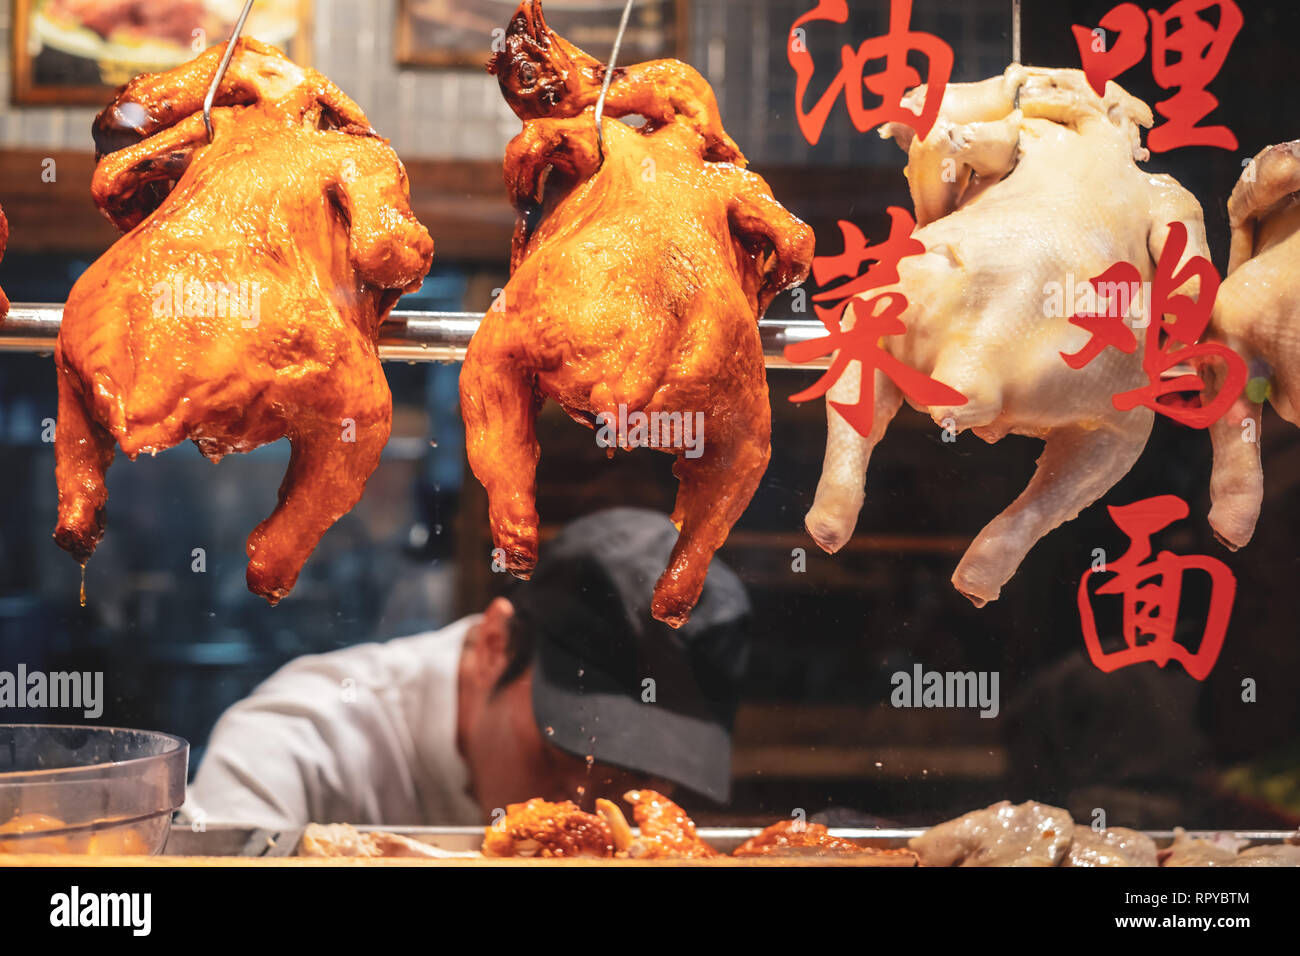 Singapour / Juin 2014 : canards rôtis typique dans un restaurant chinois Banque D'Images